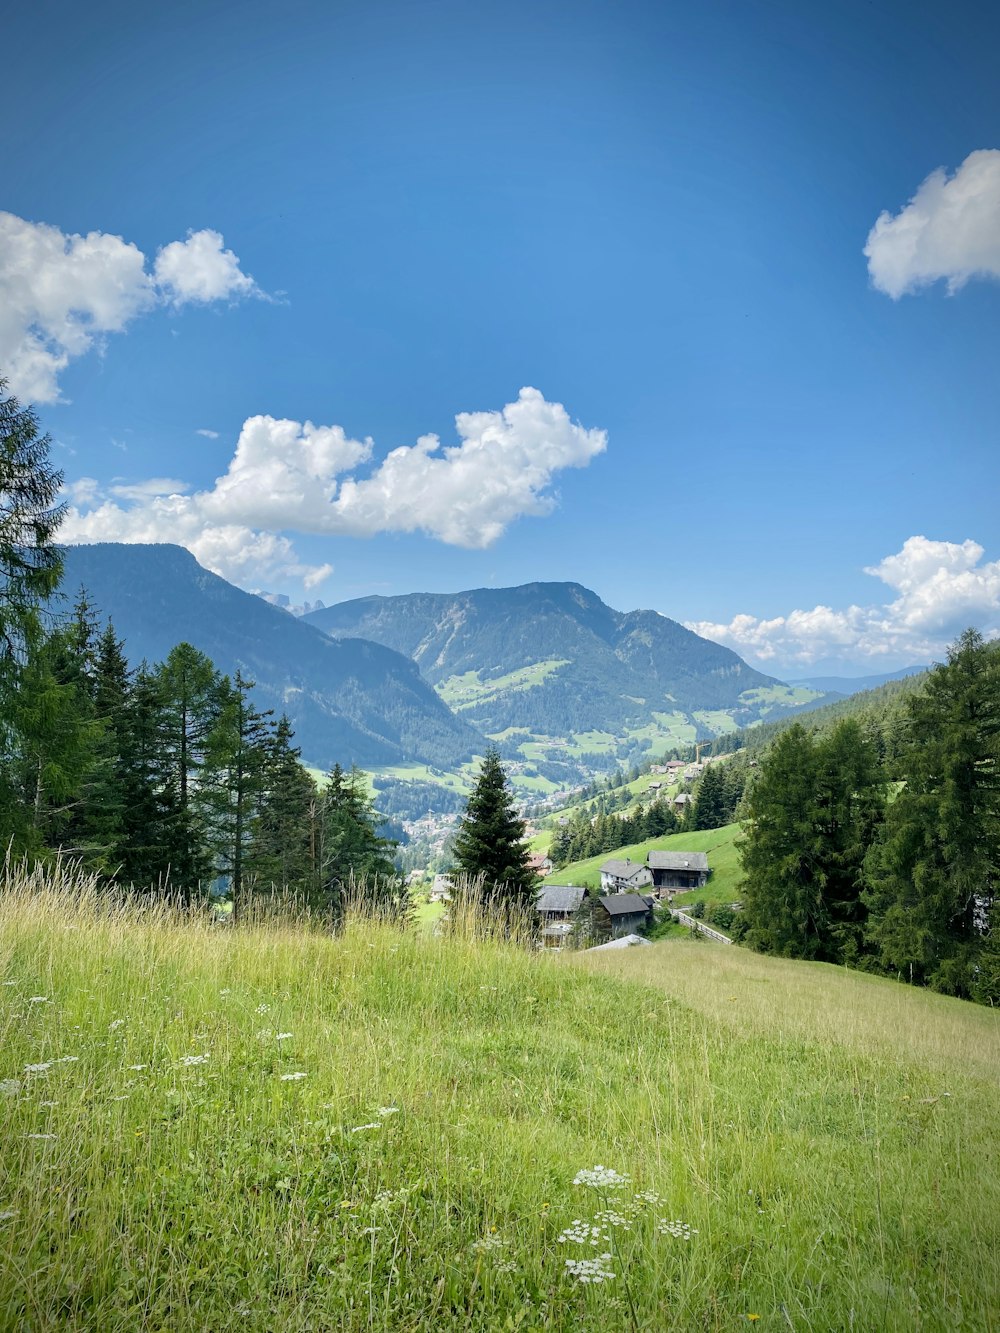 Campo di erba verde vicino a alberi verdi e montagne sotto cielo blu e nuvole bianche durante il giorno